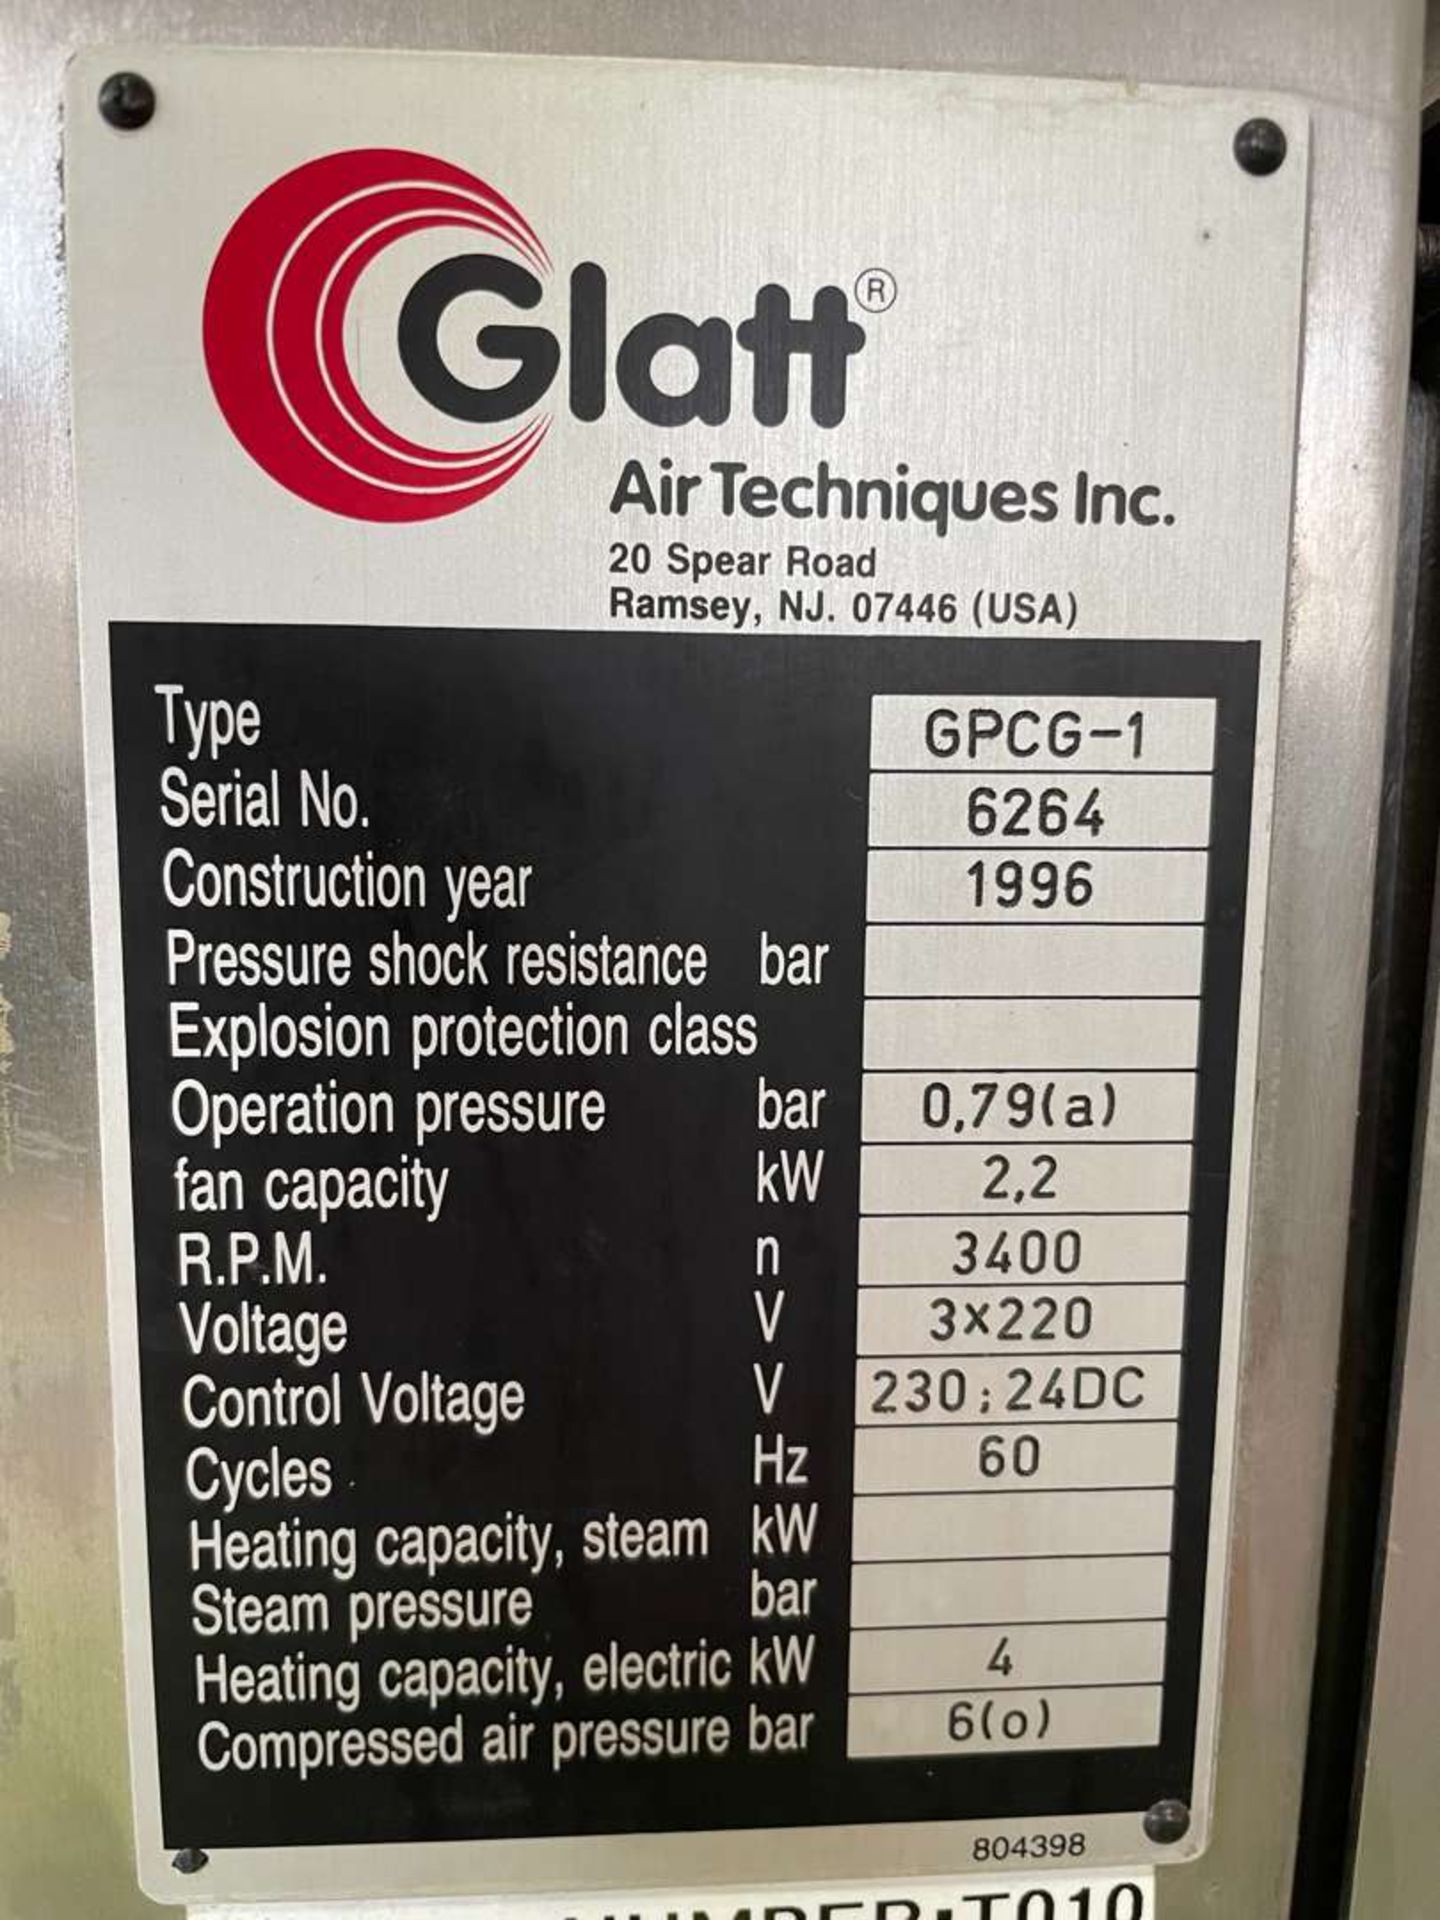 Glatt model GPCG1 stainless steel mobile fluid bed dryer system - Image 4 of 4